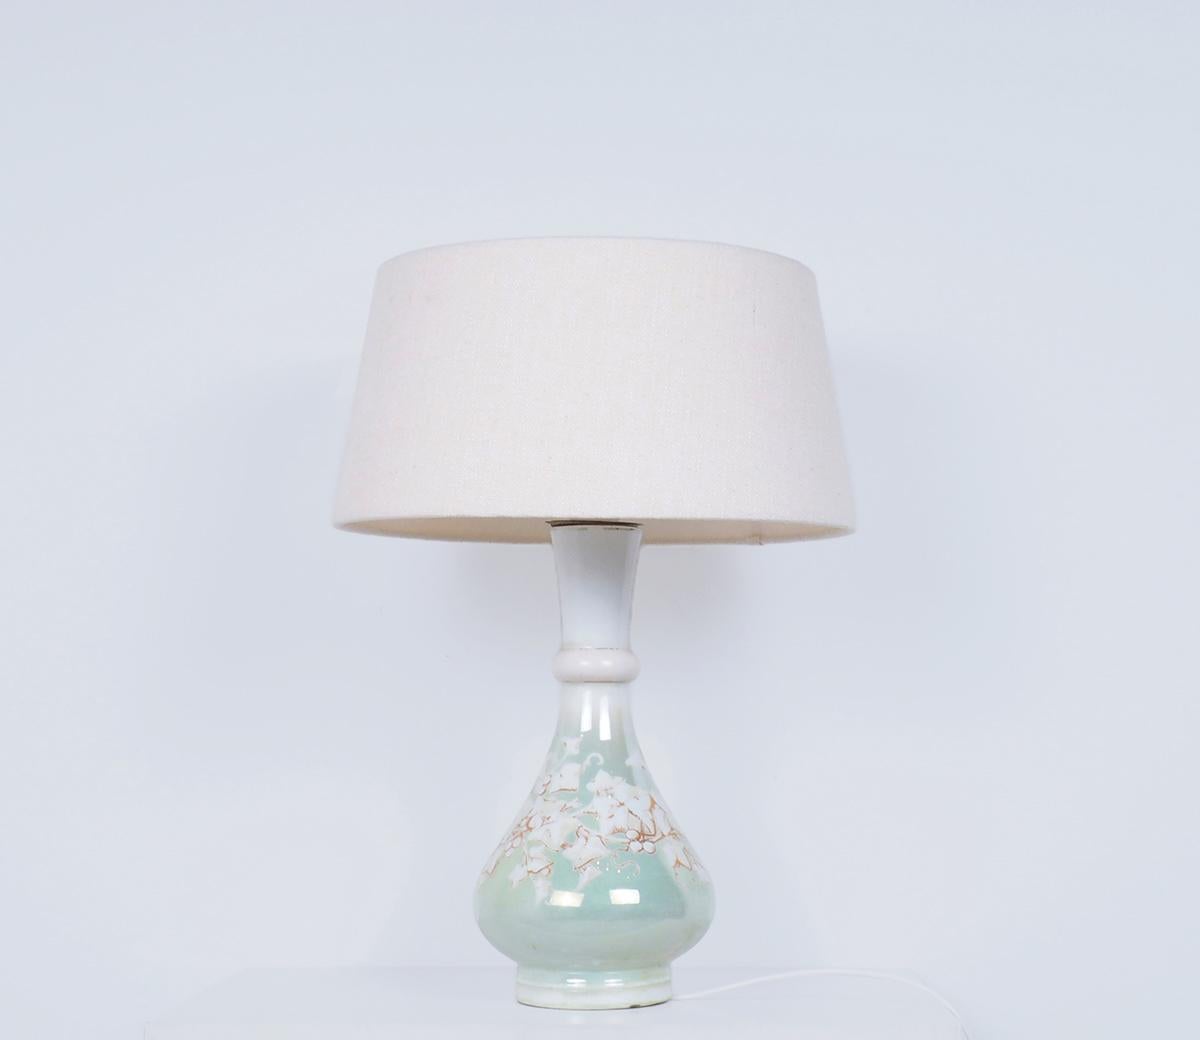 Belle lampe de table ancienne en porcelaine élégante française faite par G.B. Breveté à Paris, Belle époque et style.

La lampe est peinte à la main et présente un décor de feuilles de vigne.

avec des accents dorés sur un fond vert lime